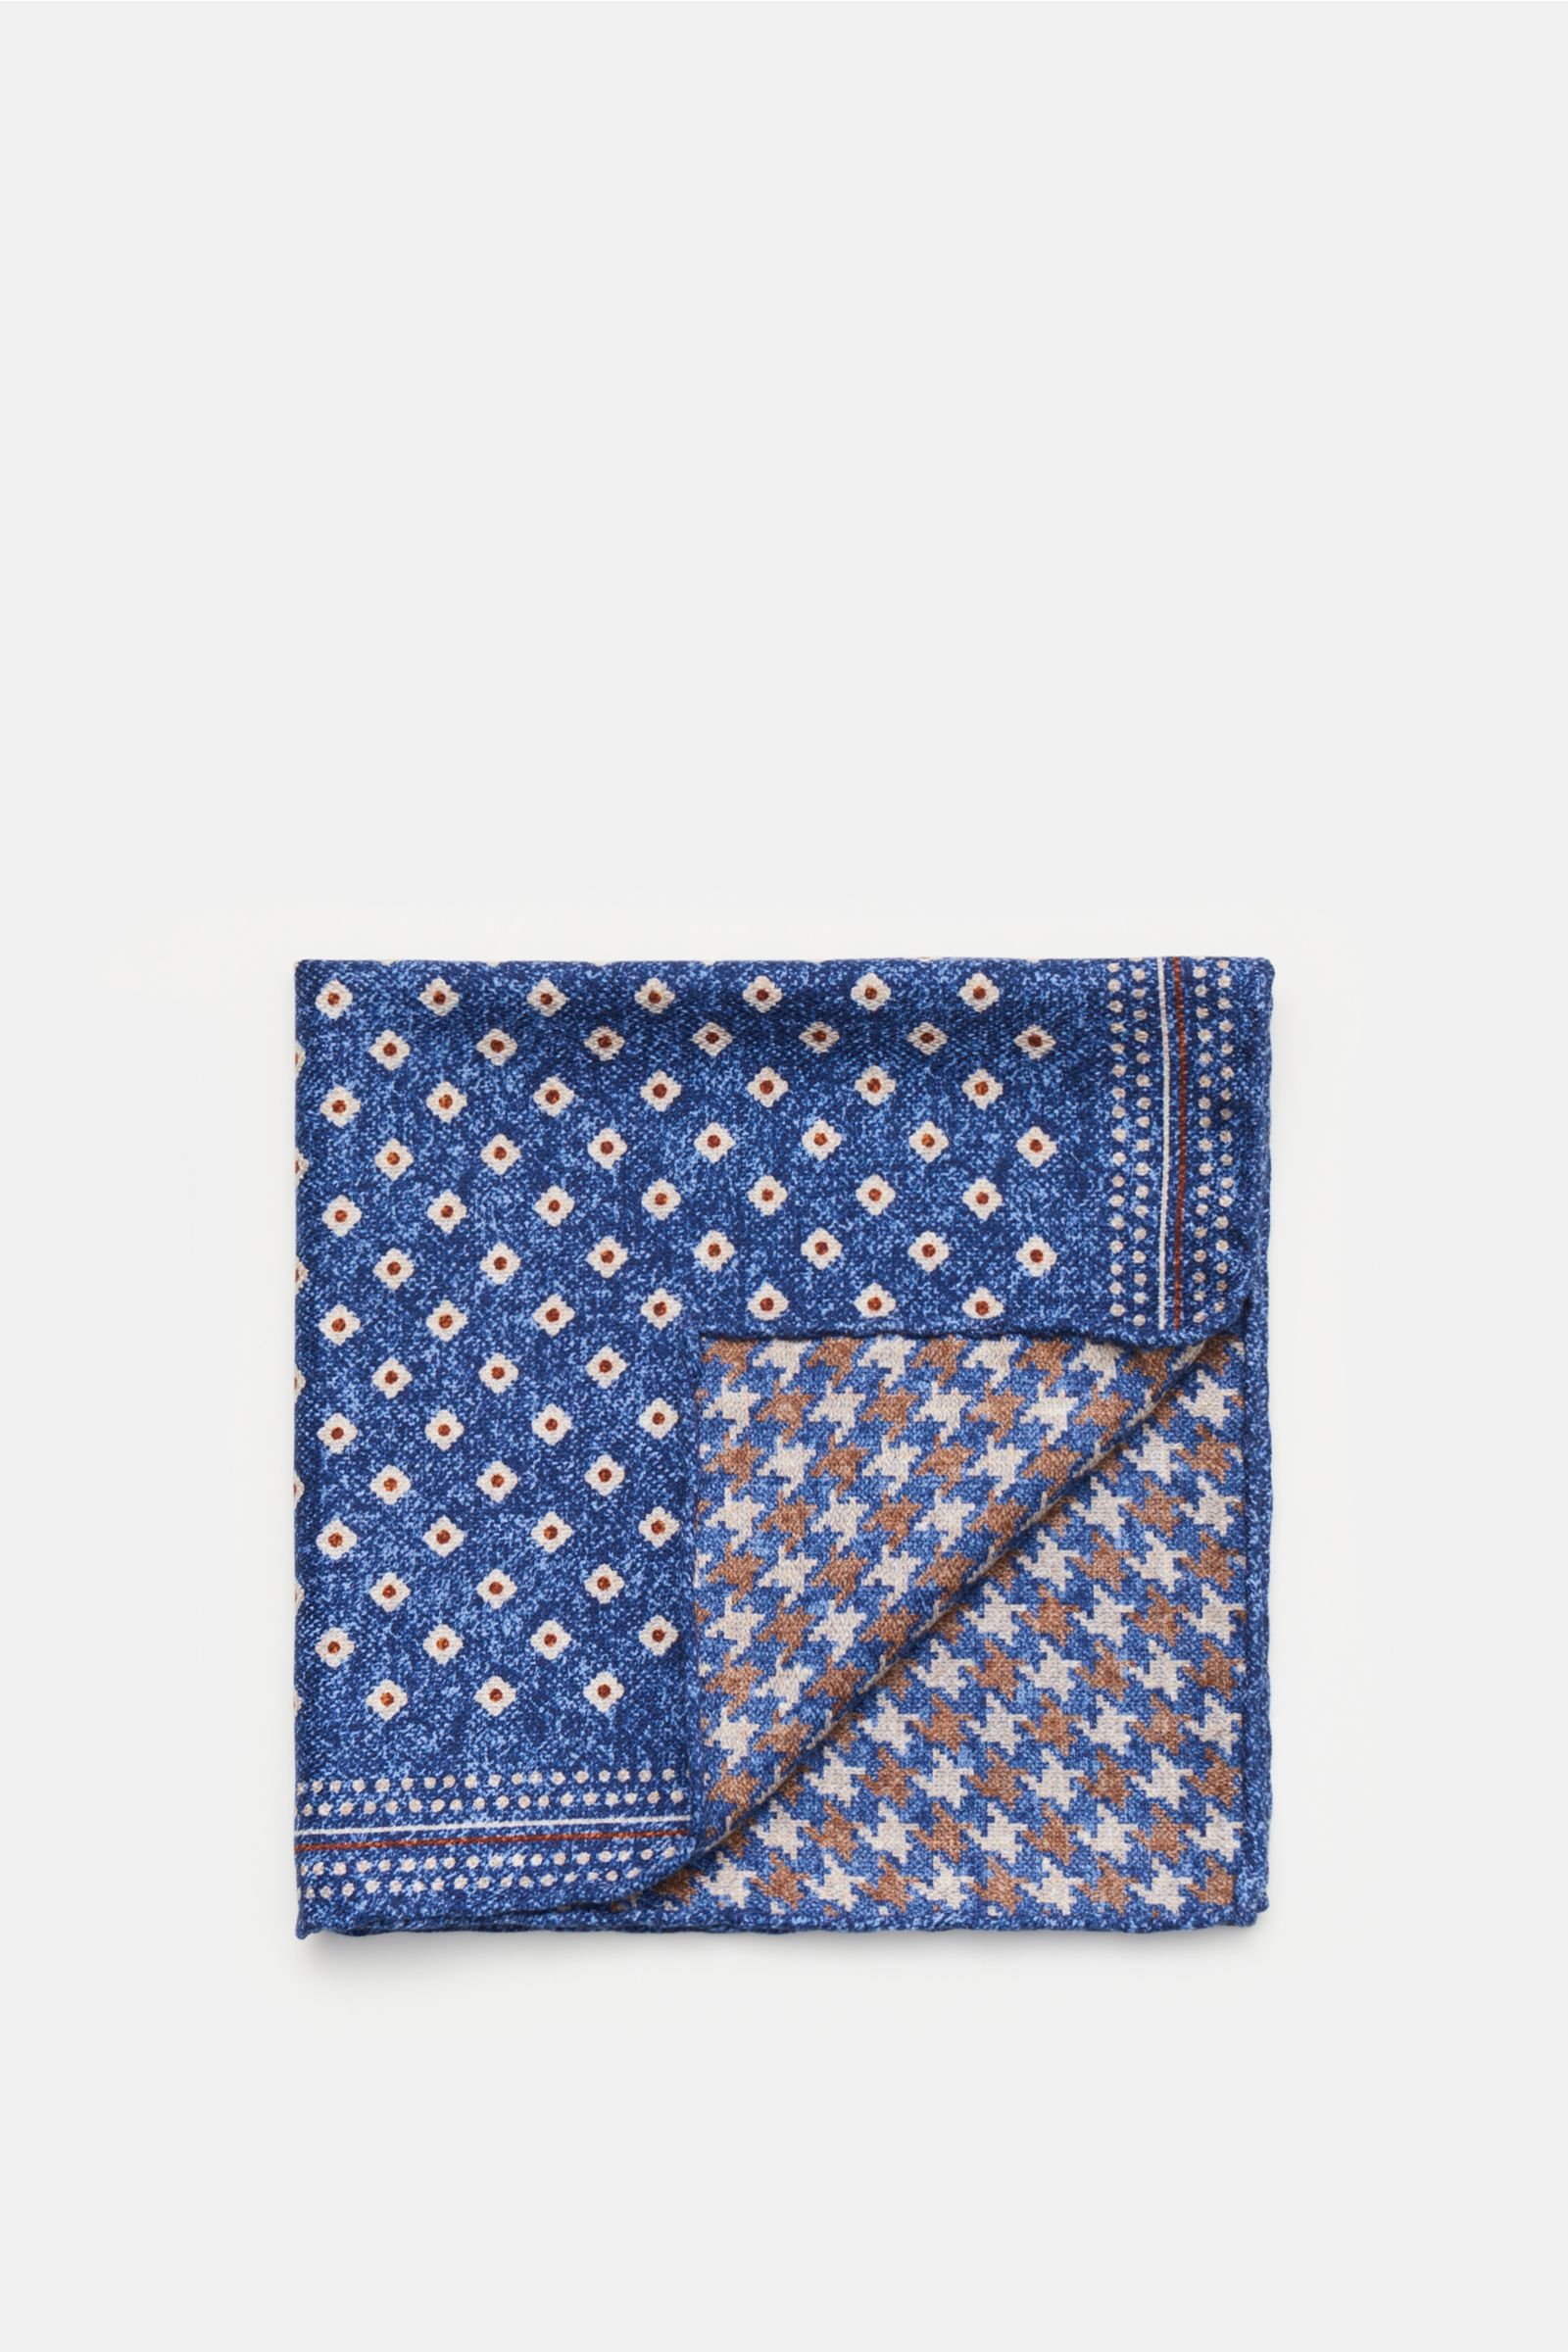 Pocket square grey-blue/grey-brown patterned